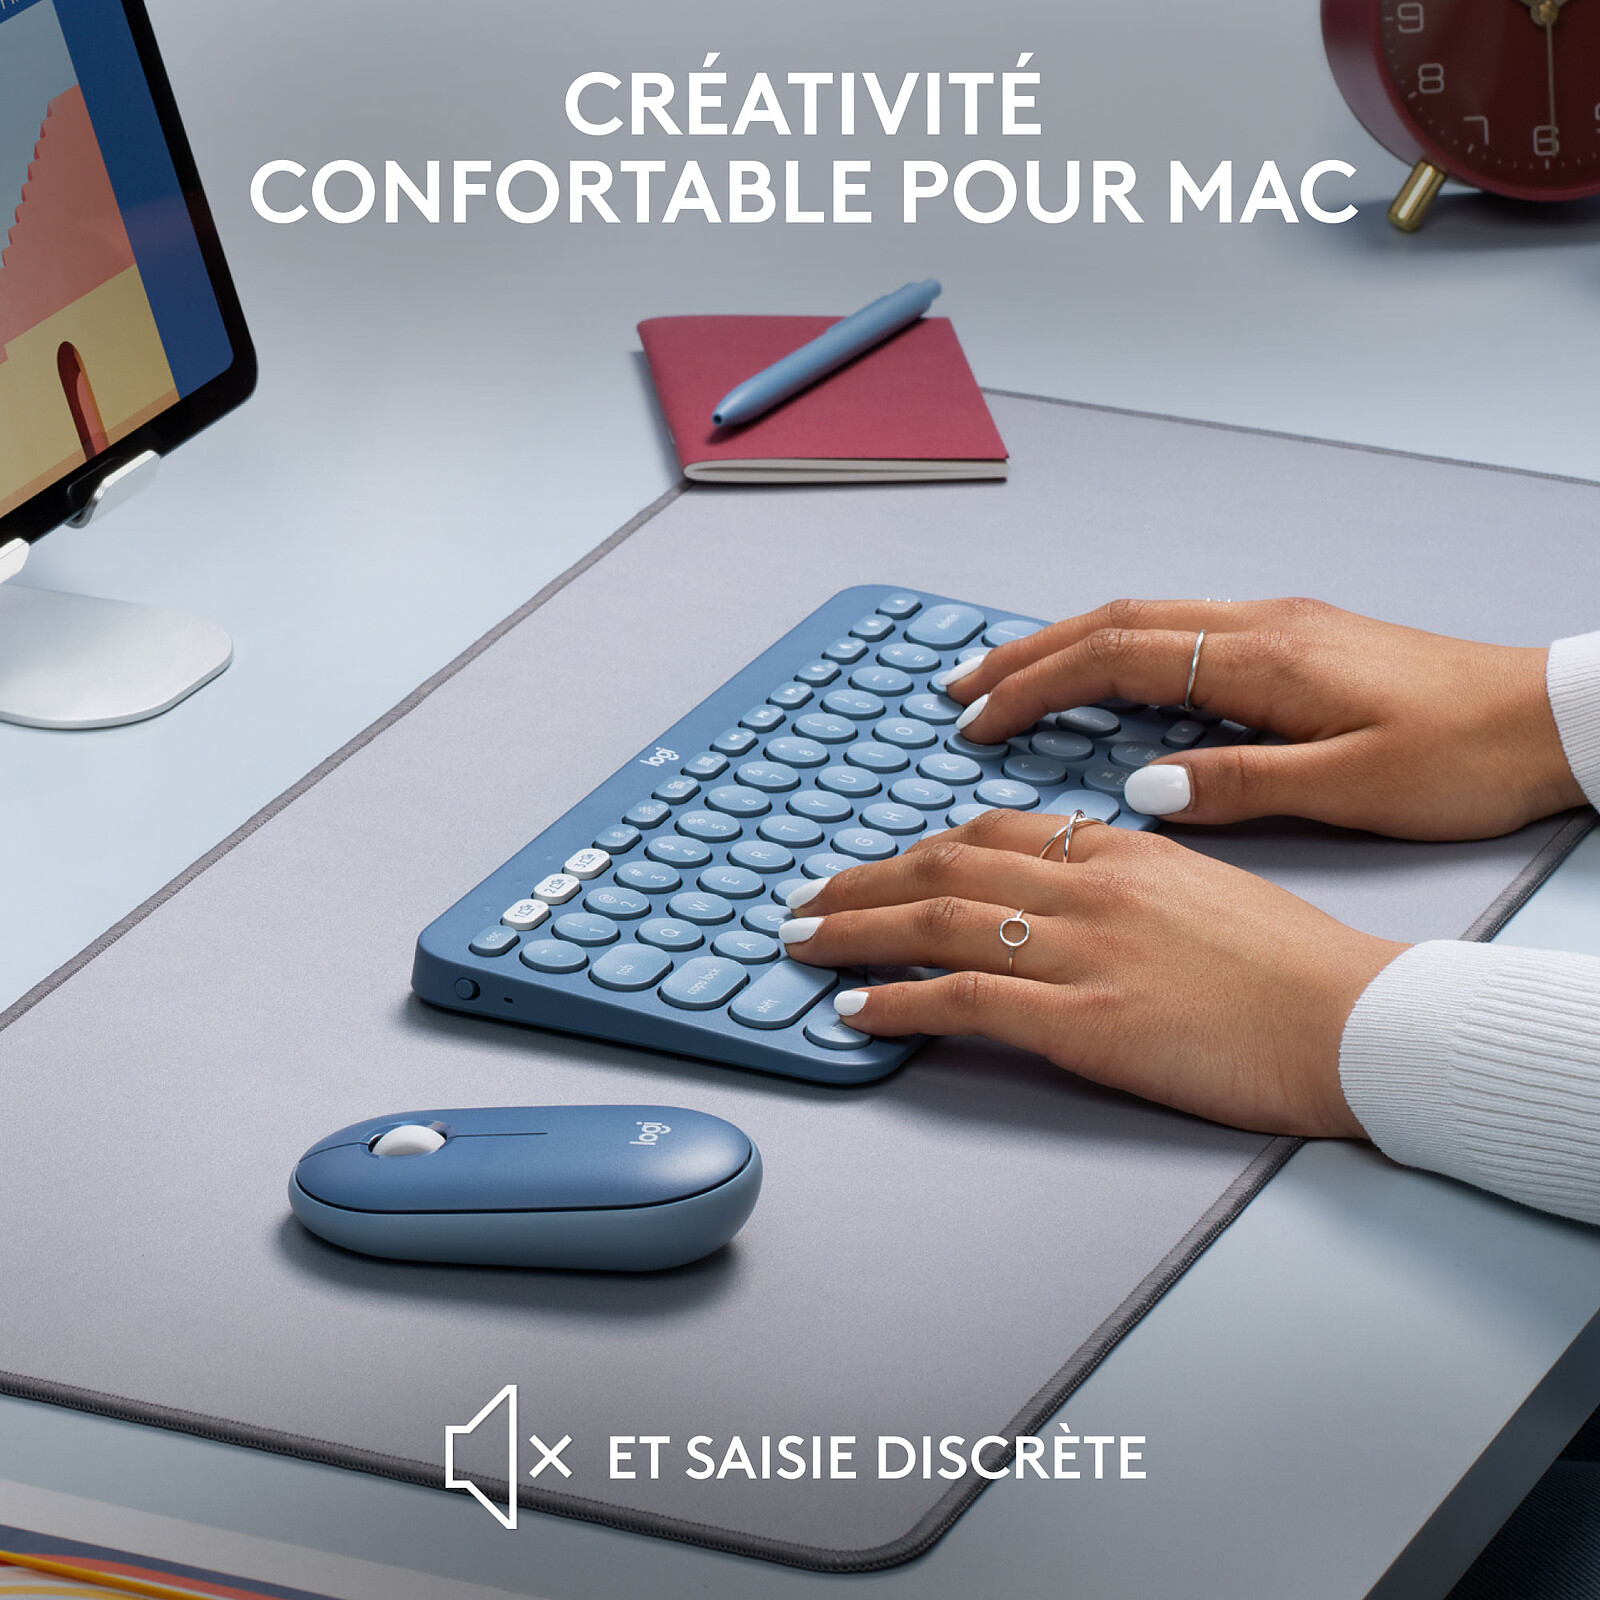 Jusqu'à -29% sur les souris et clavier Logitech : K380 pour Mac et iPad à